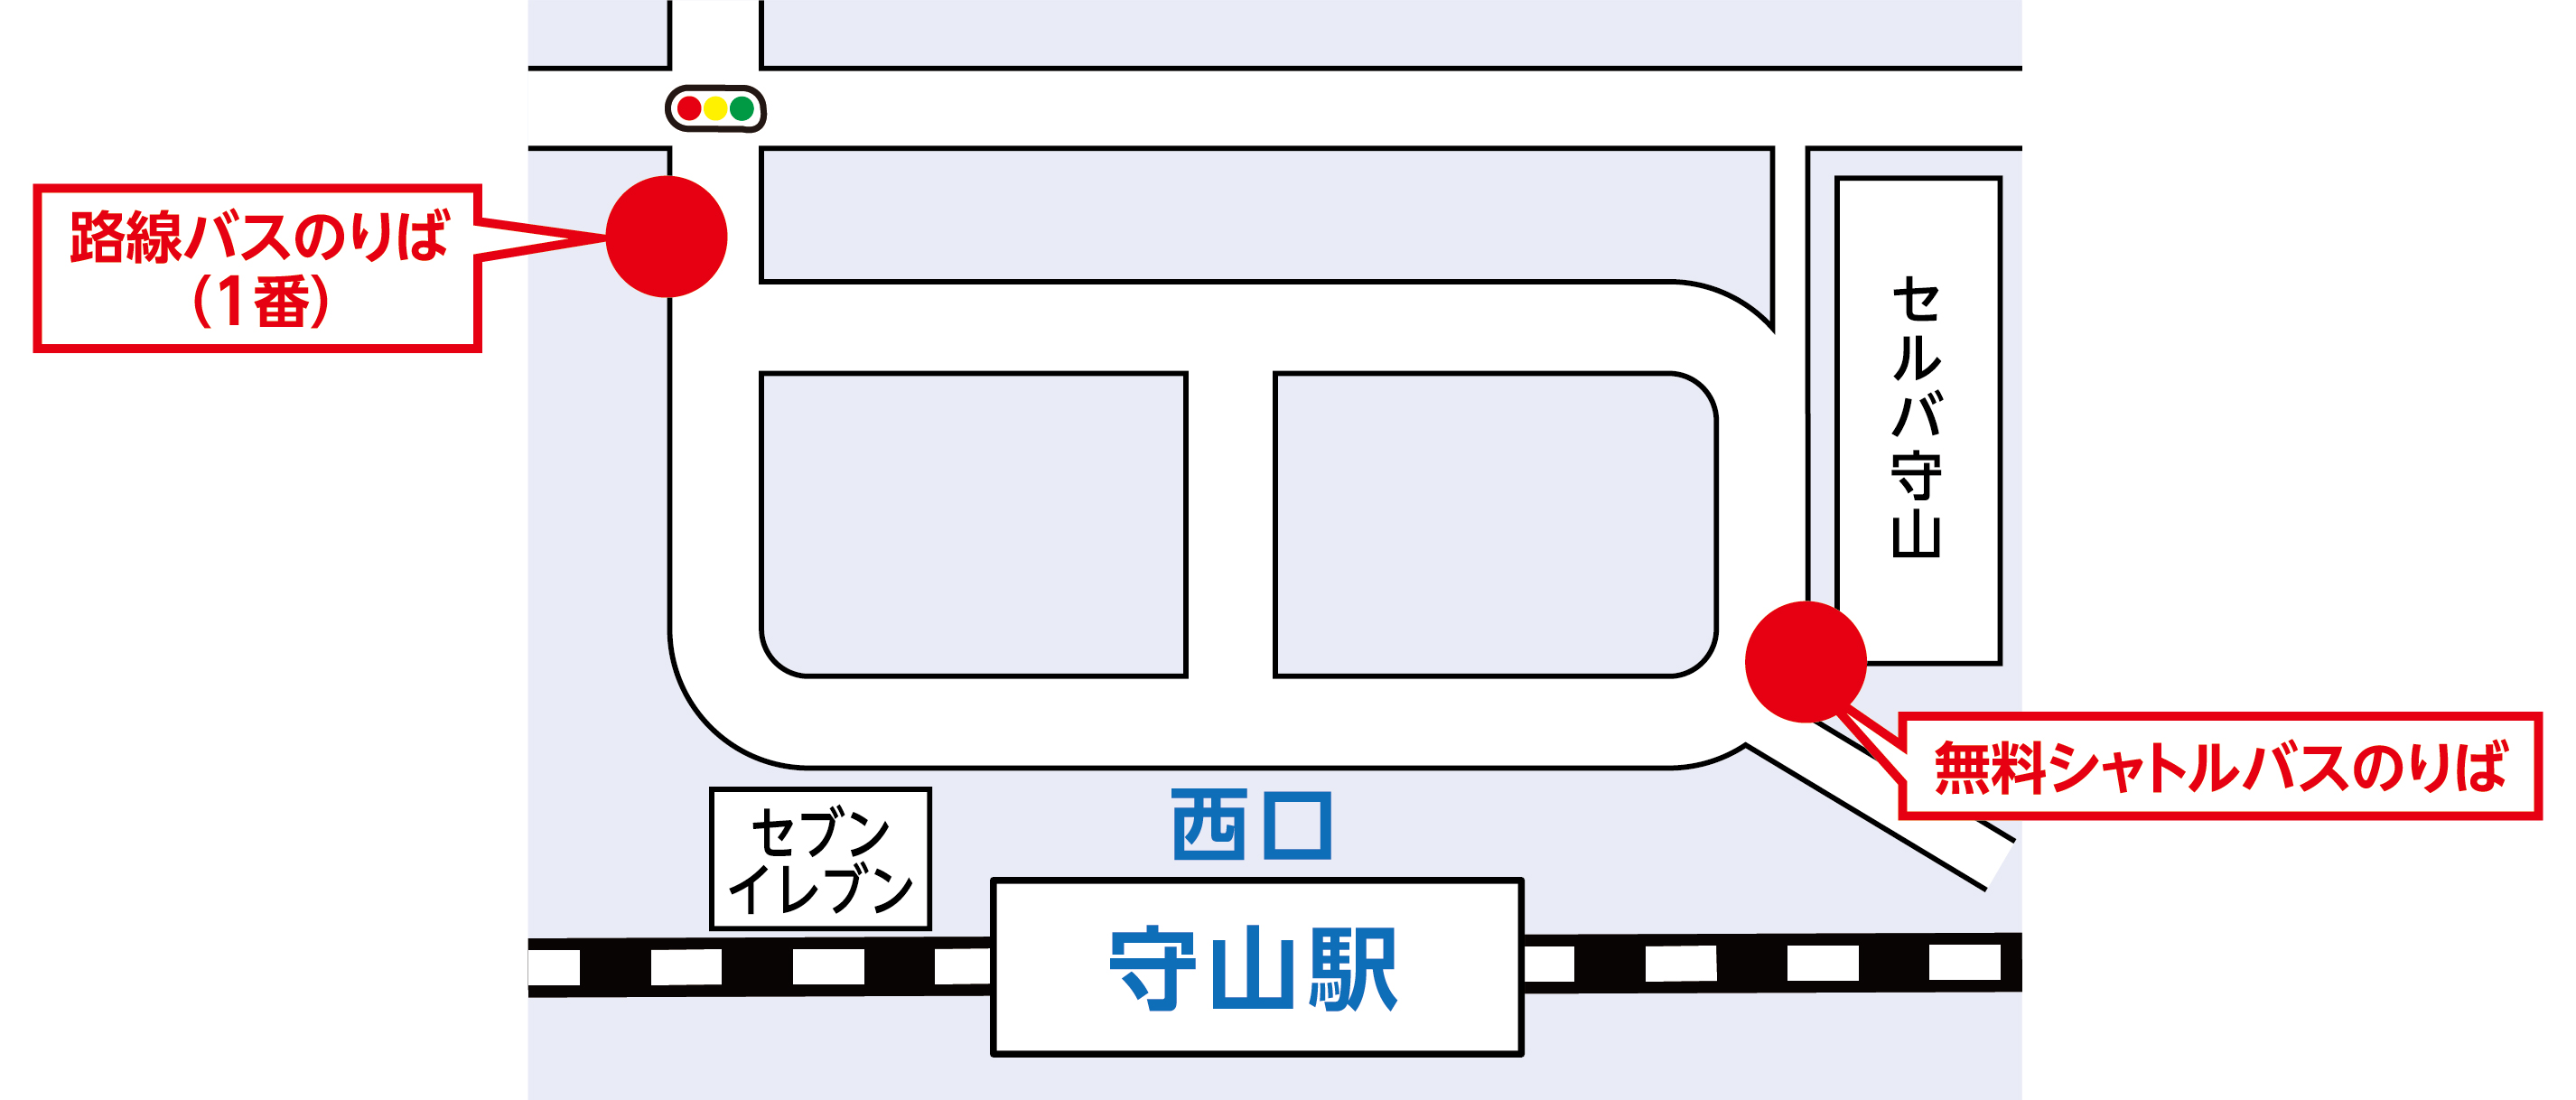 新 守山 駅 時刻 表